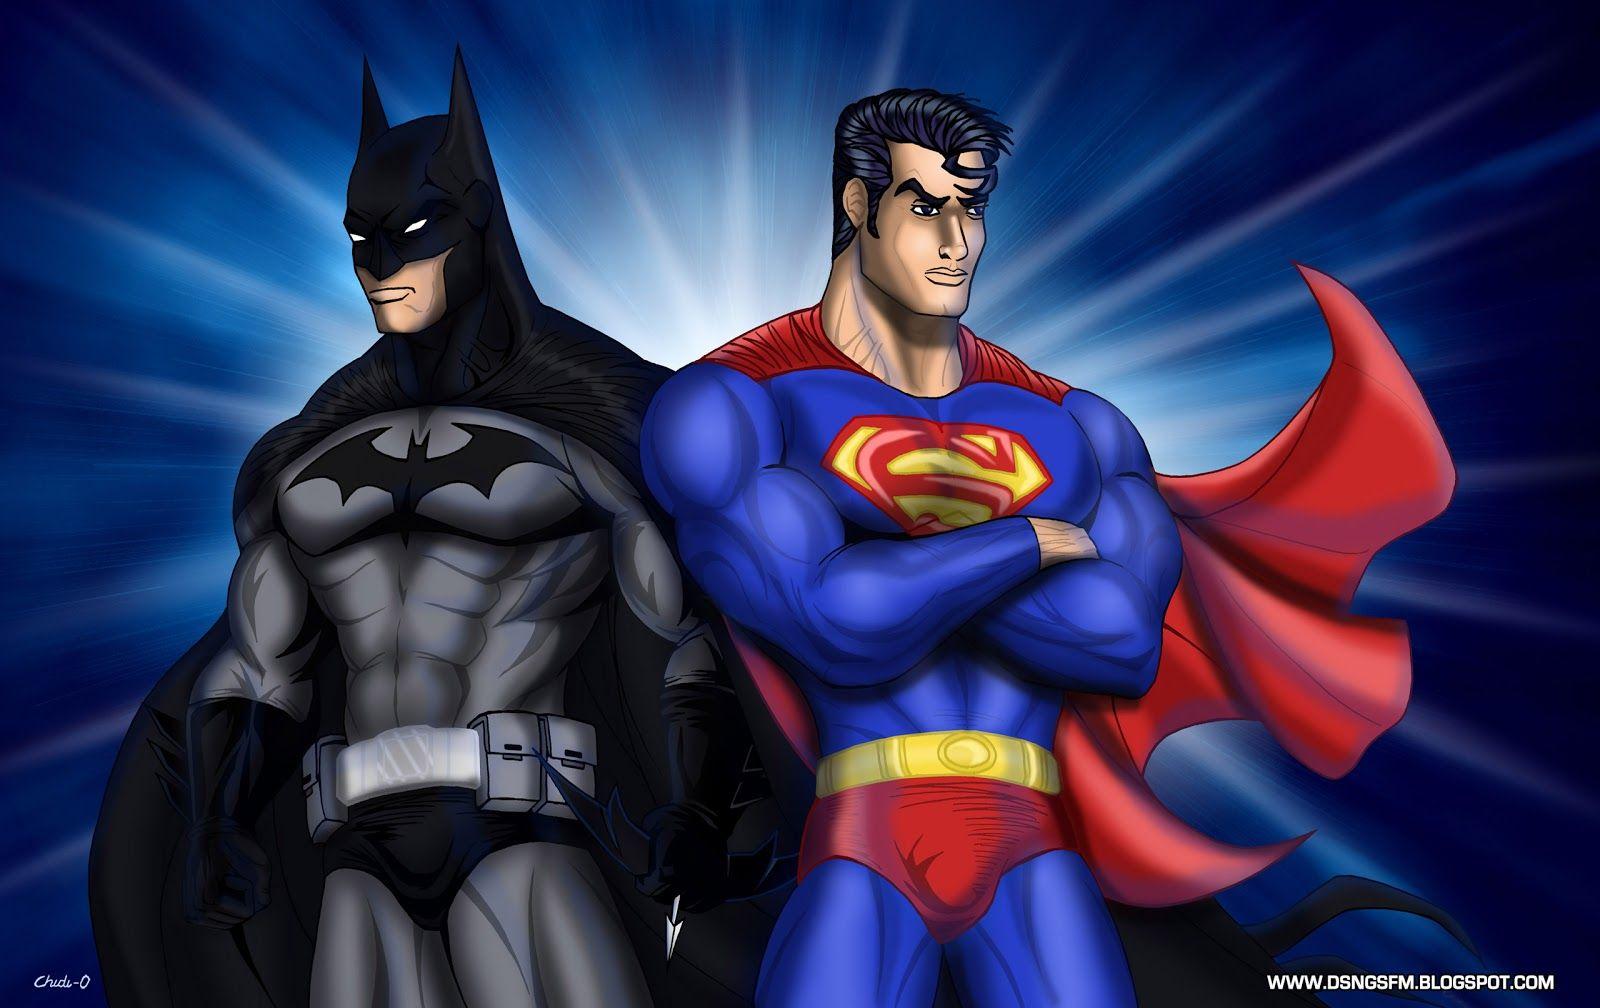 Cockham superheroes. Бэтмен и Супермен. Супермен Бэтмен Спайдермен. Бэтмен человек паук Супермен. Бэтмен Бэтмен Бэтмен Супермен человек паук.